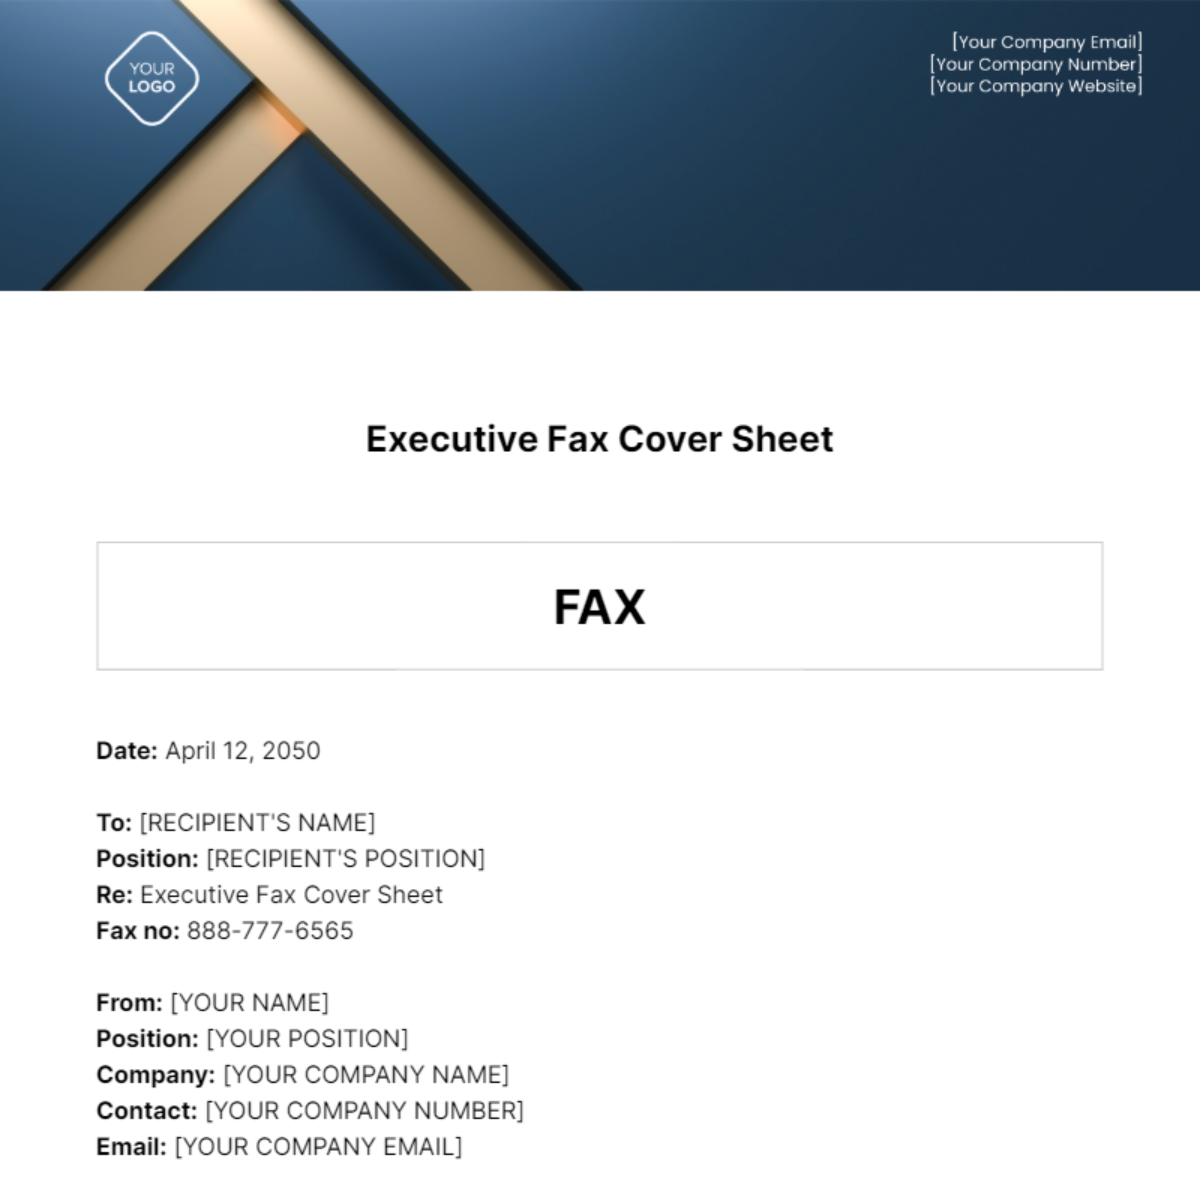 Executive Fax Cover Sheet Template